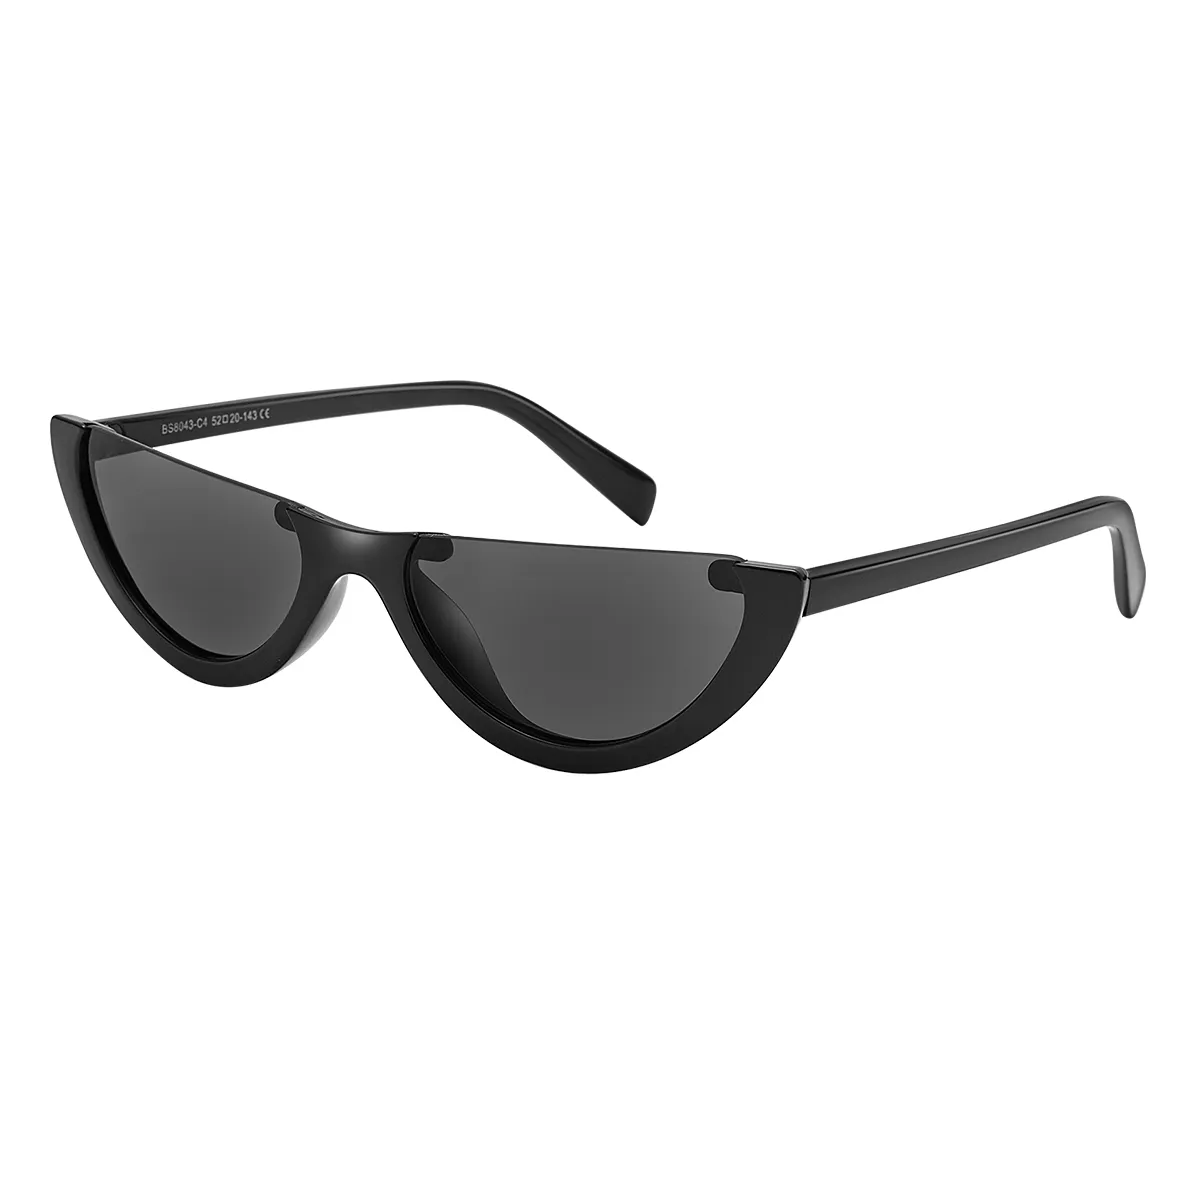 Bach - Cat-eye Black Sunglasses for Women